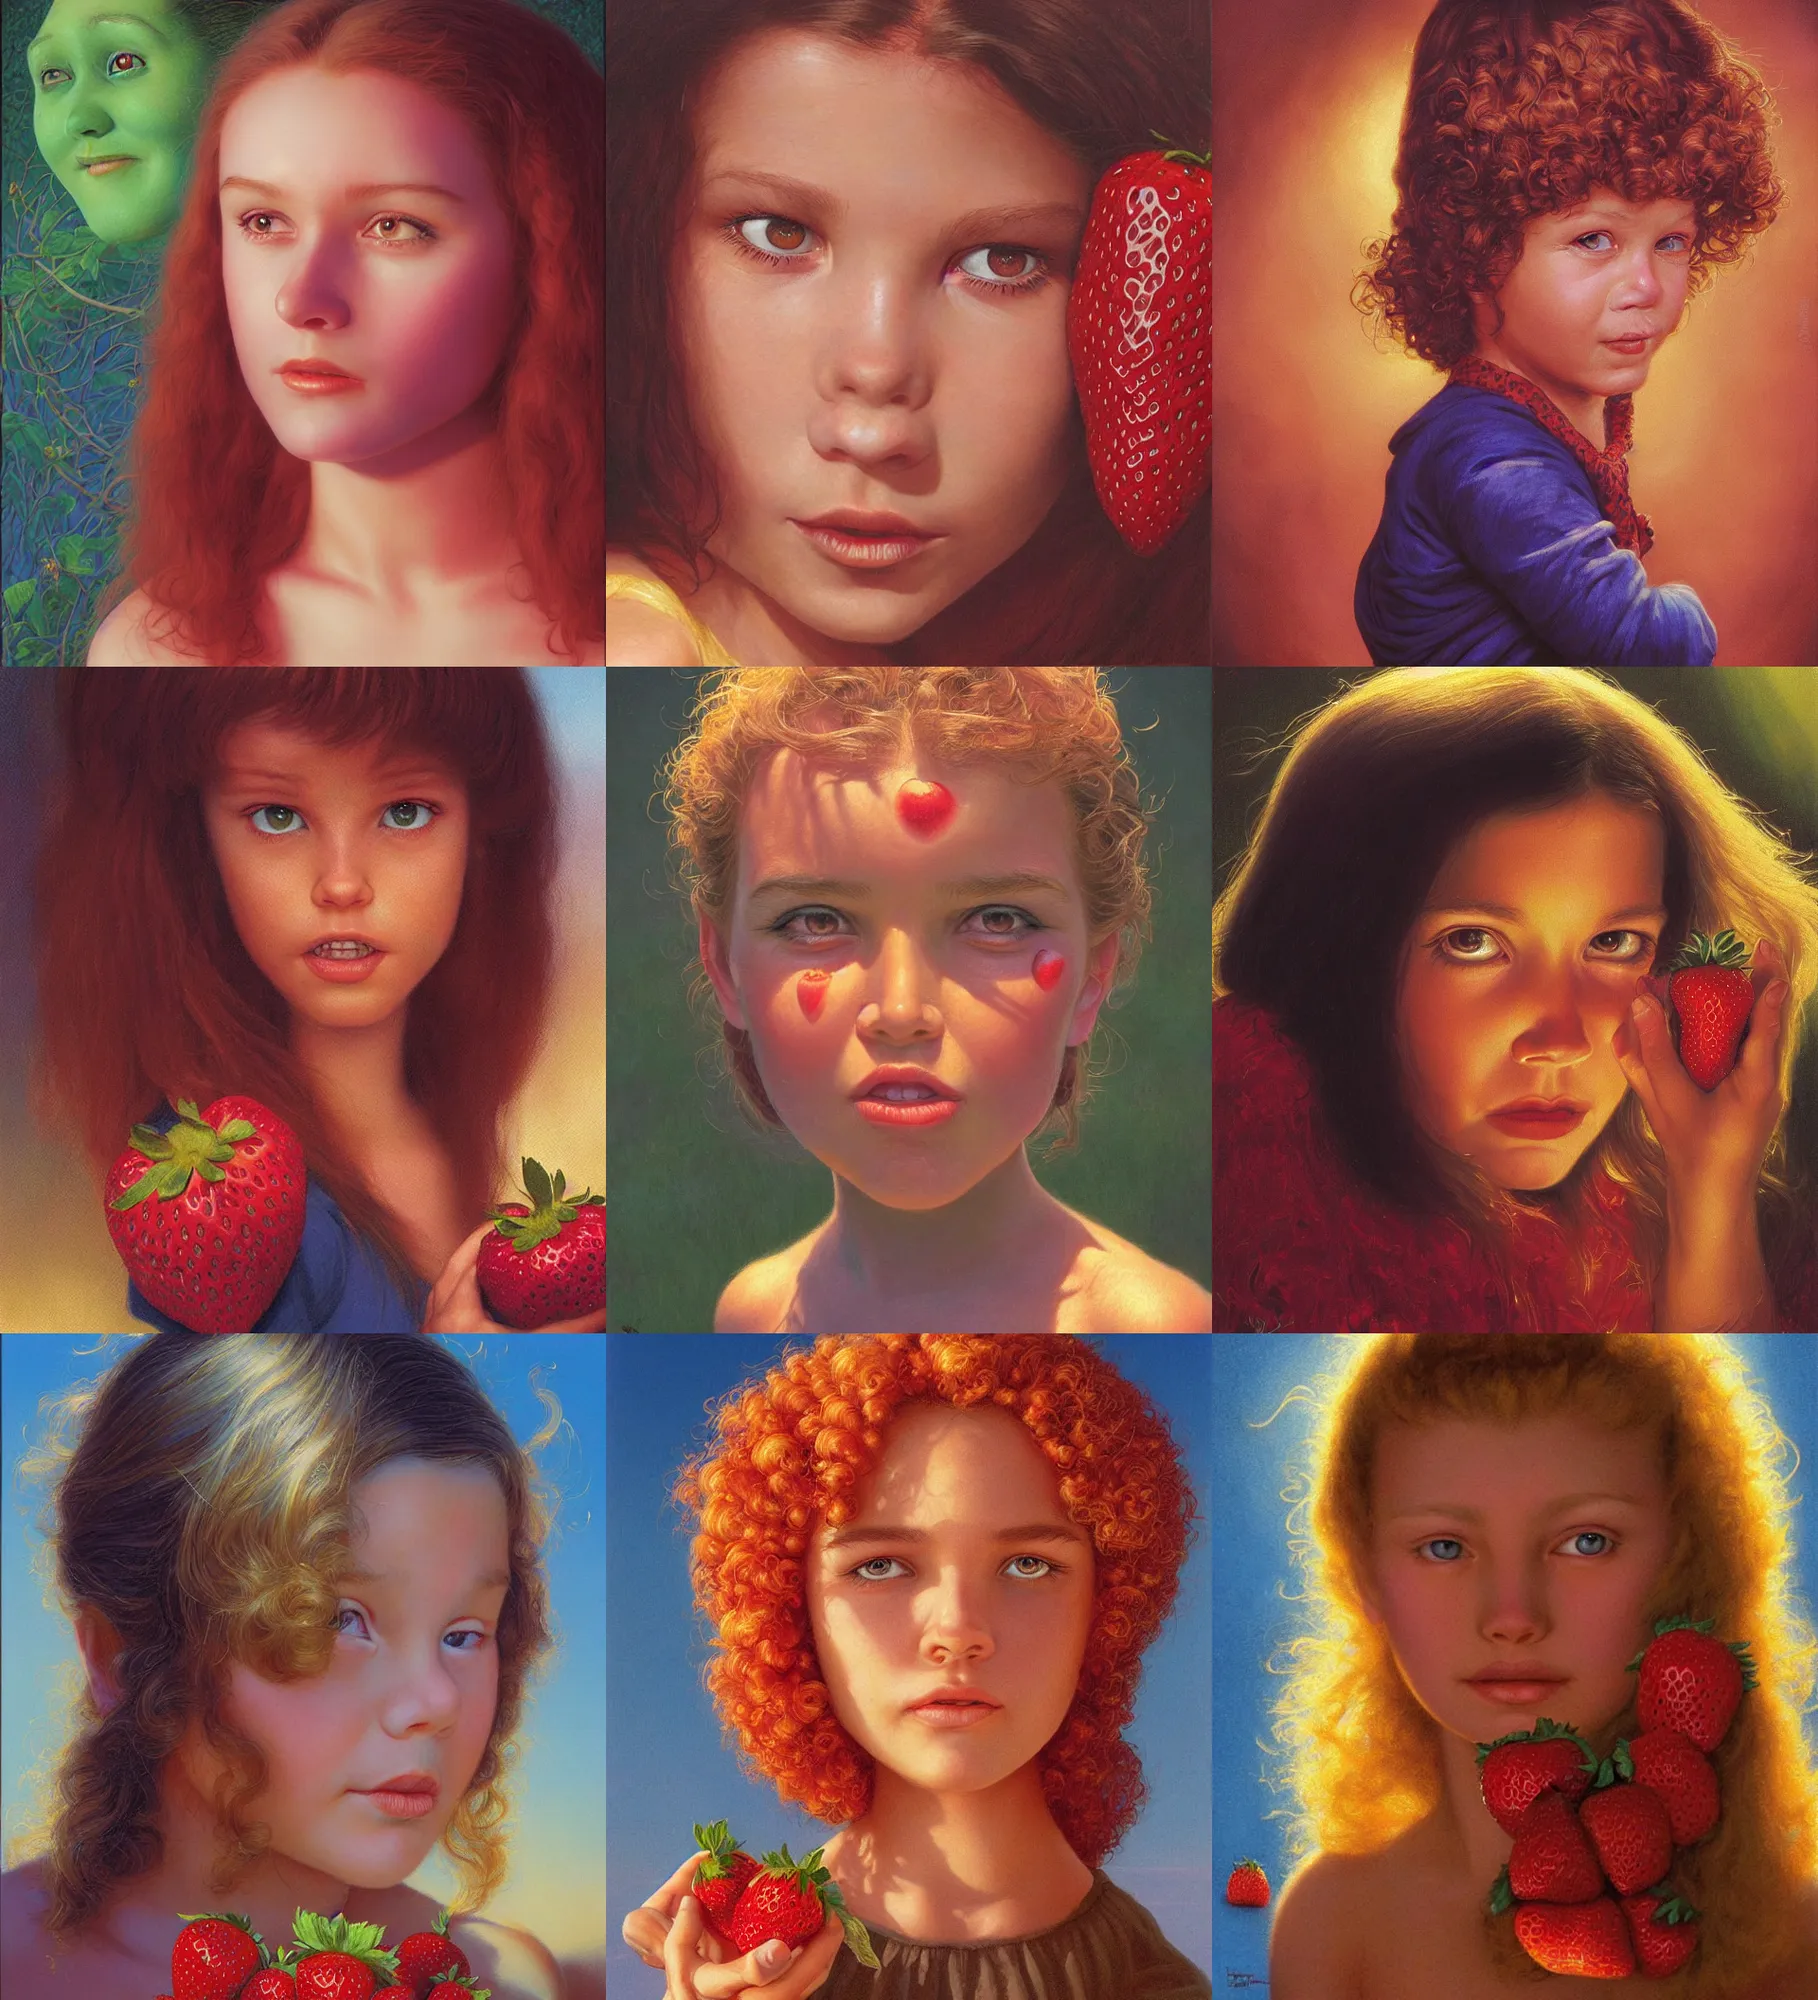 Prompt: face portrait young girl, strawberries, golden hour, 1 9 8 0, greg hildebrandt, ralph horsley, john howe, victor nizovtsev, steve argyle, mark arian, karol bak, daniel f. gerhartz, mary jane ansell